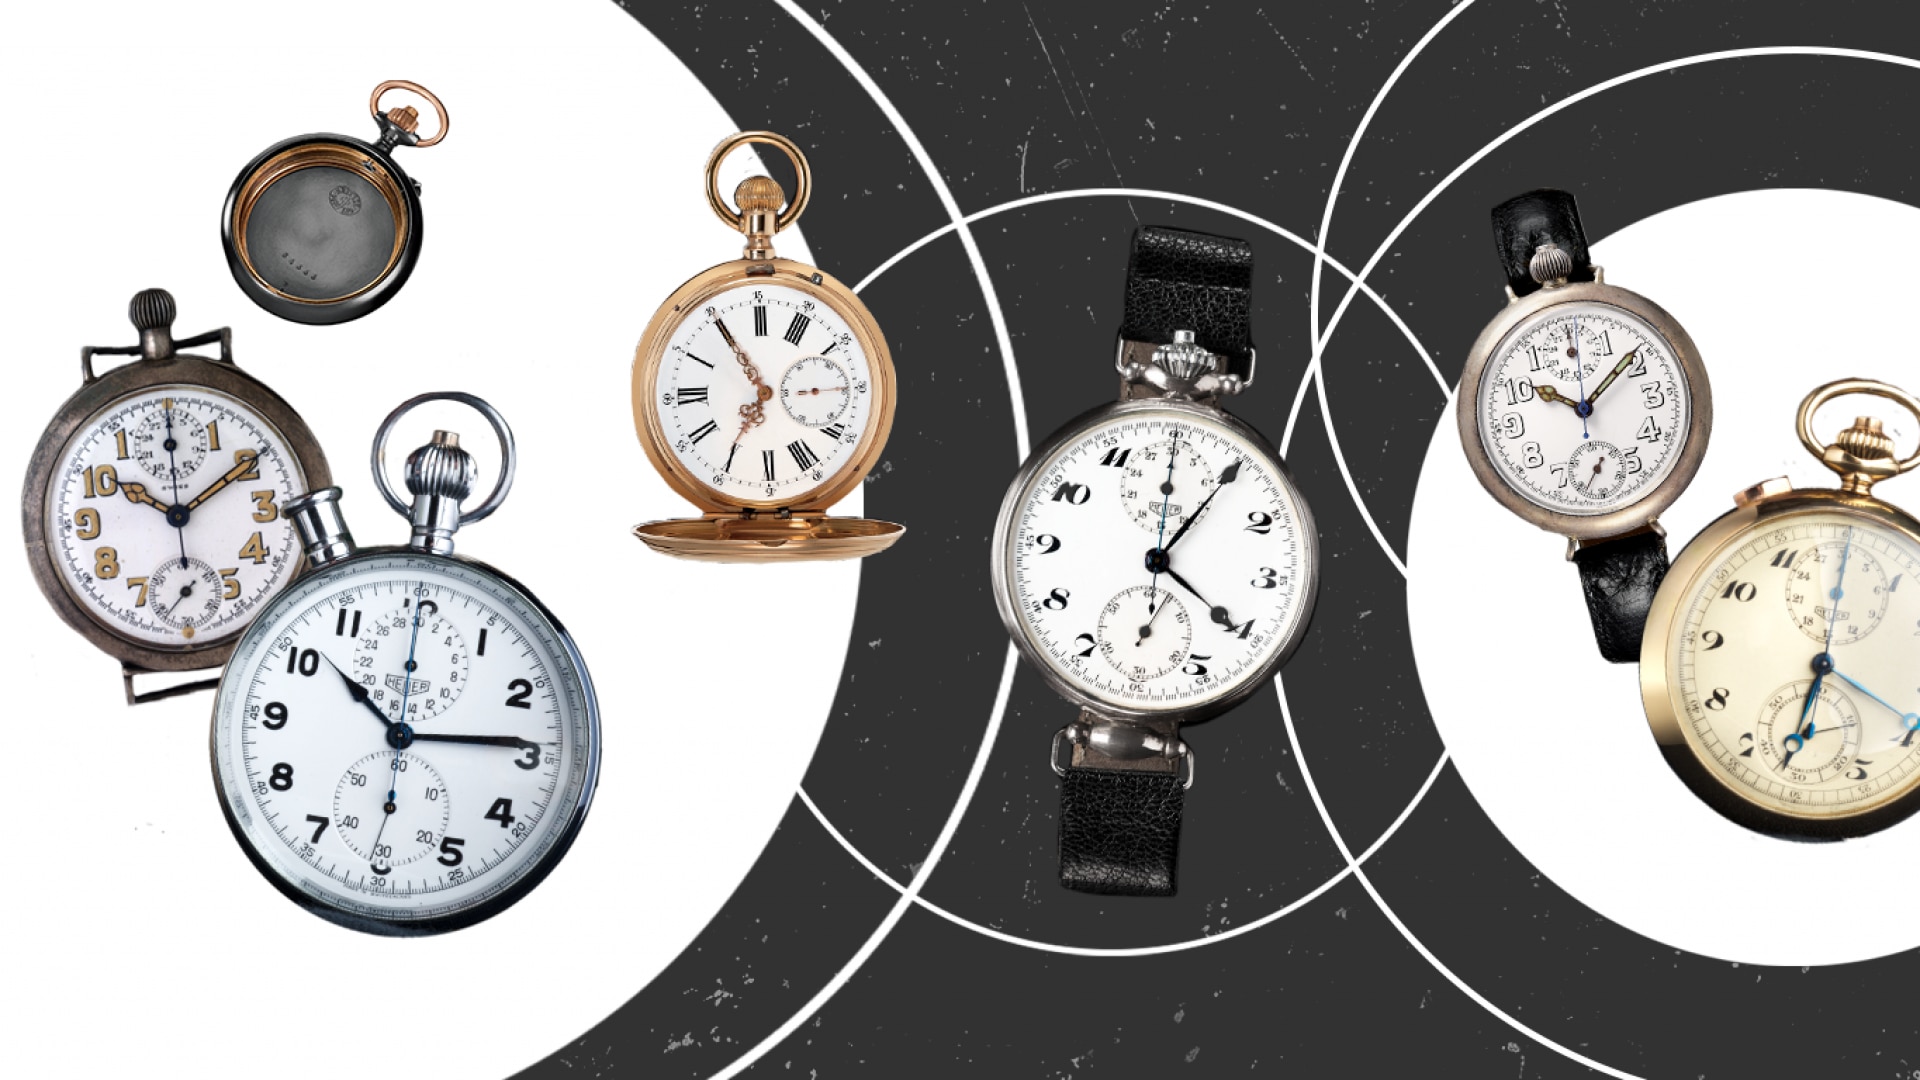 Montre bracelet contre montre de poche : un duel vieux comme l'horlogerie -  KRONOS 360